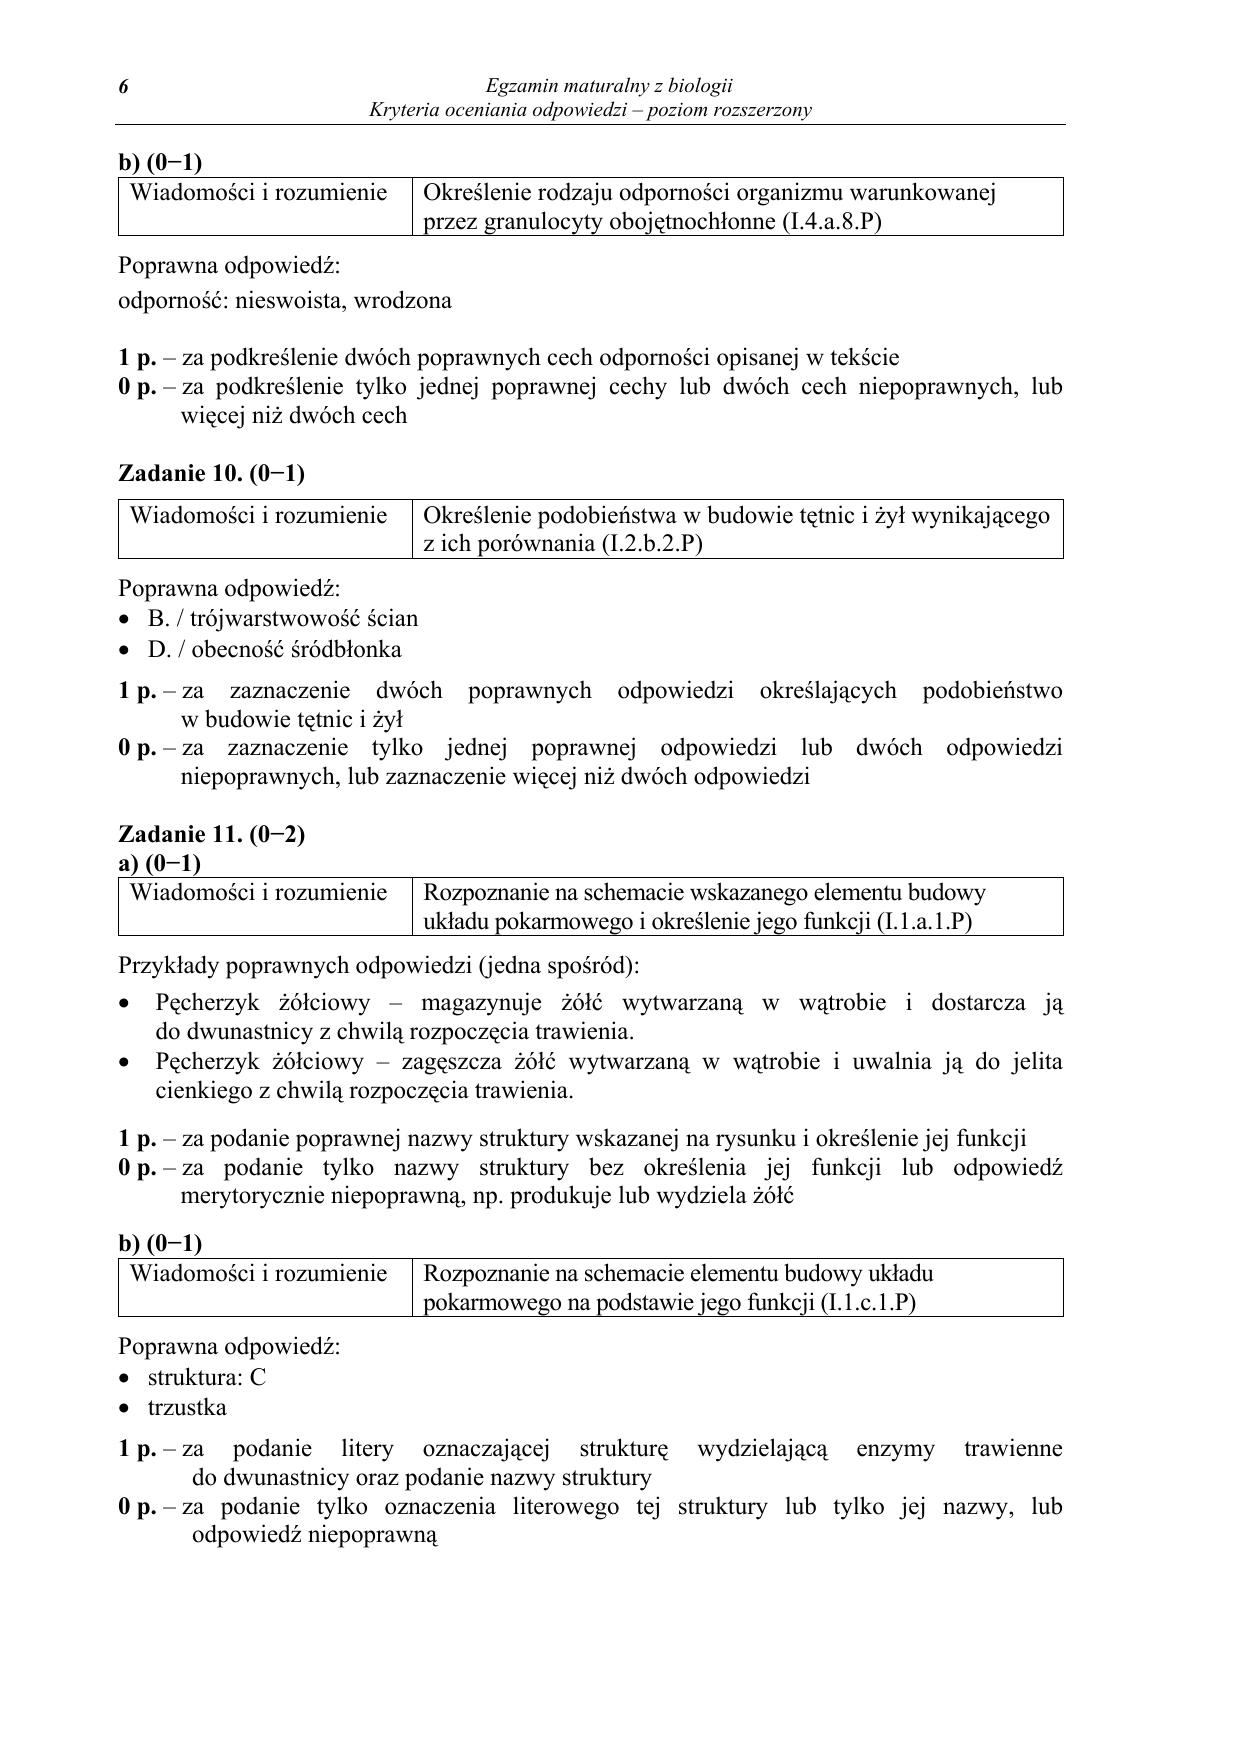 odpowiedzi-biologia-poziom-rozszerzony-matura-2012-06